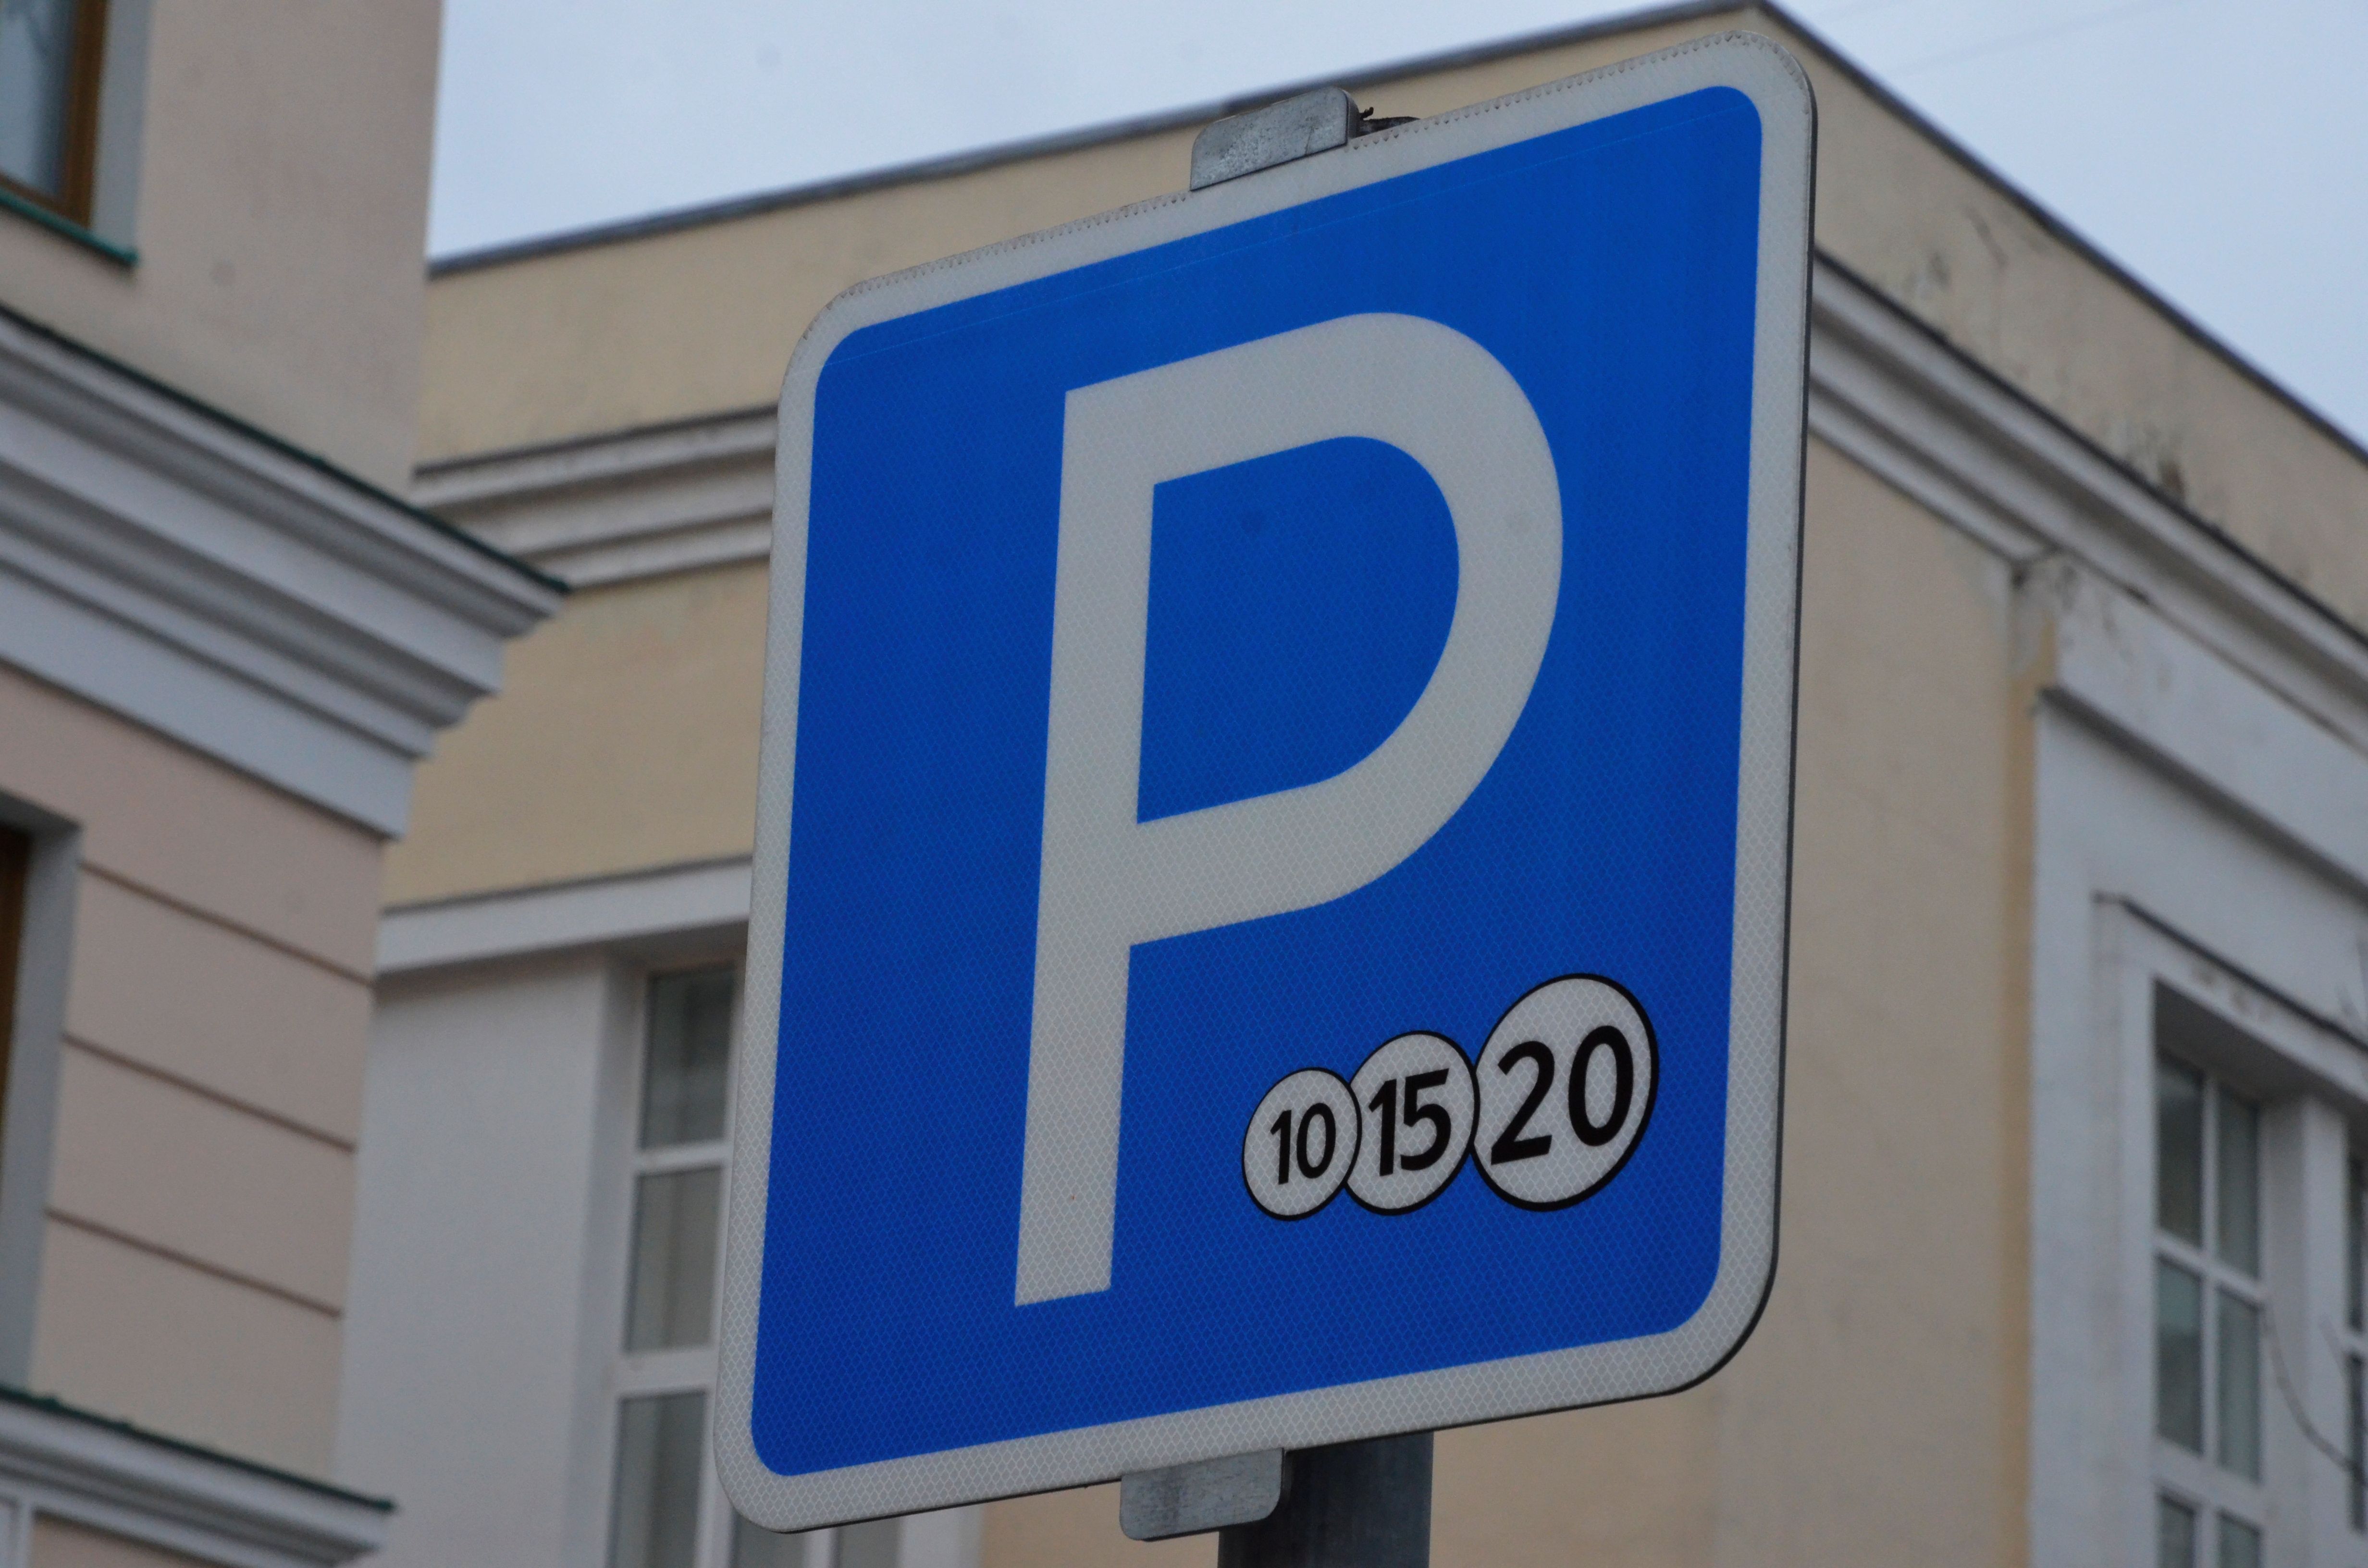 Более 100 медицинских сотрудников воспользовались правом бесплатной парковки